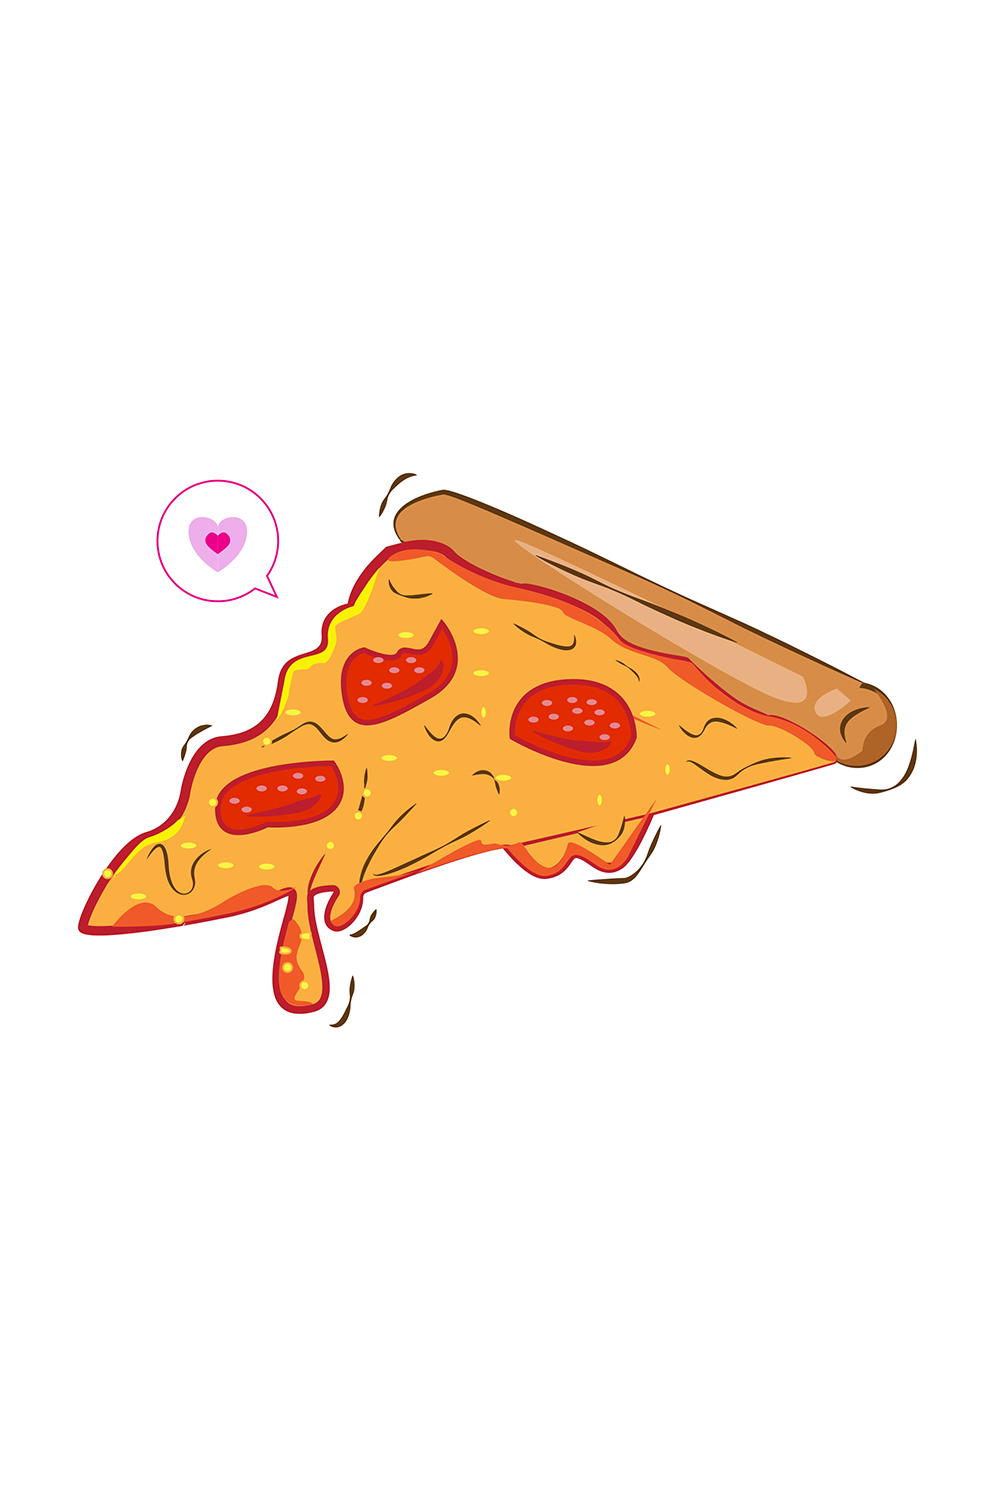 Pizza Logo Illustration Art Design pinterest image.